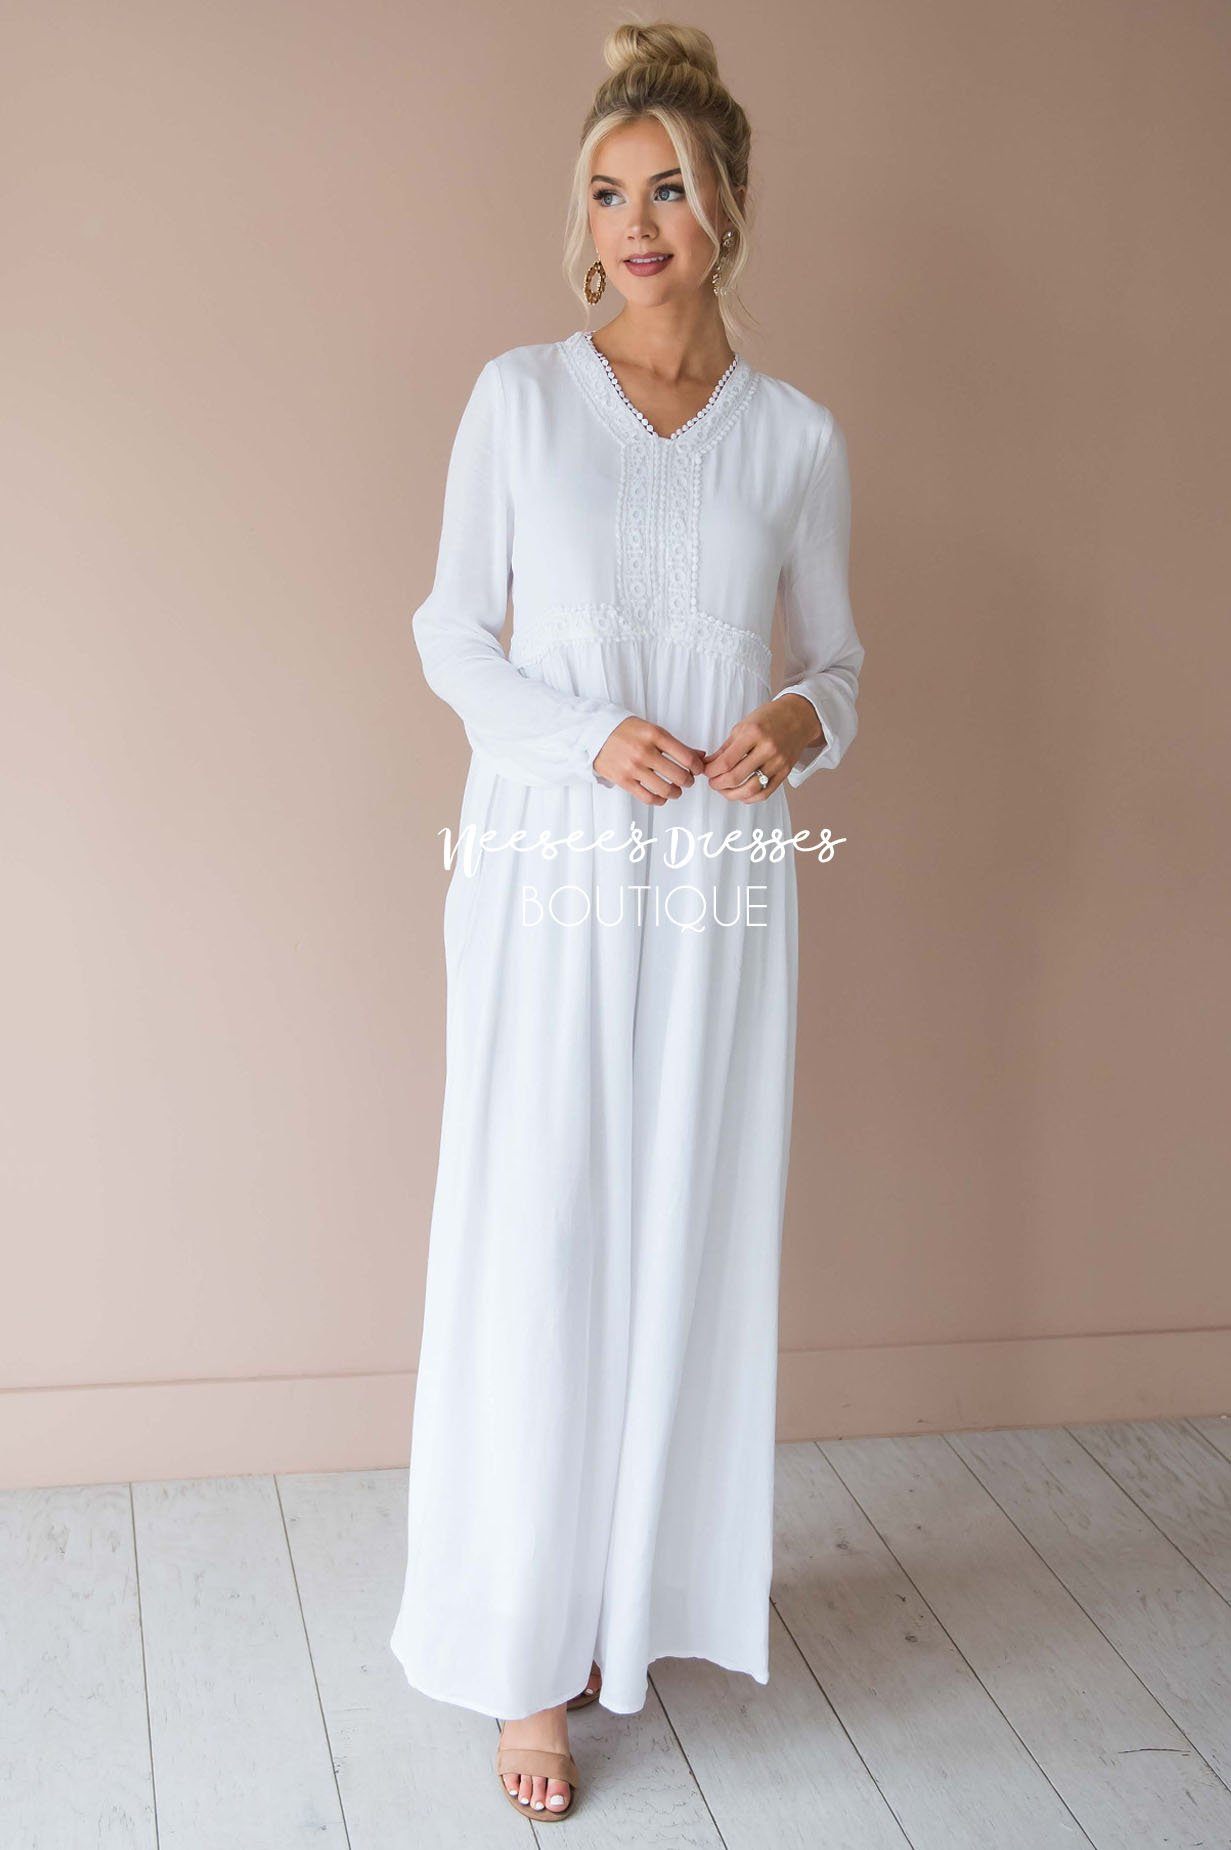 Modest Long Sleeve White Dress Online ...